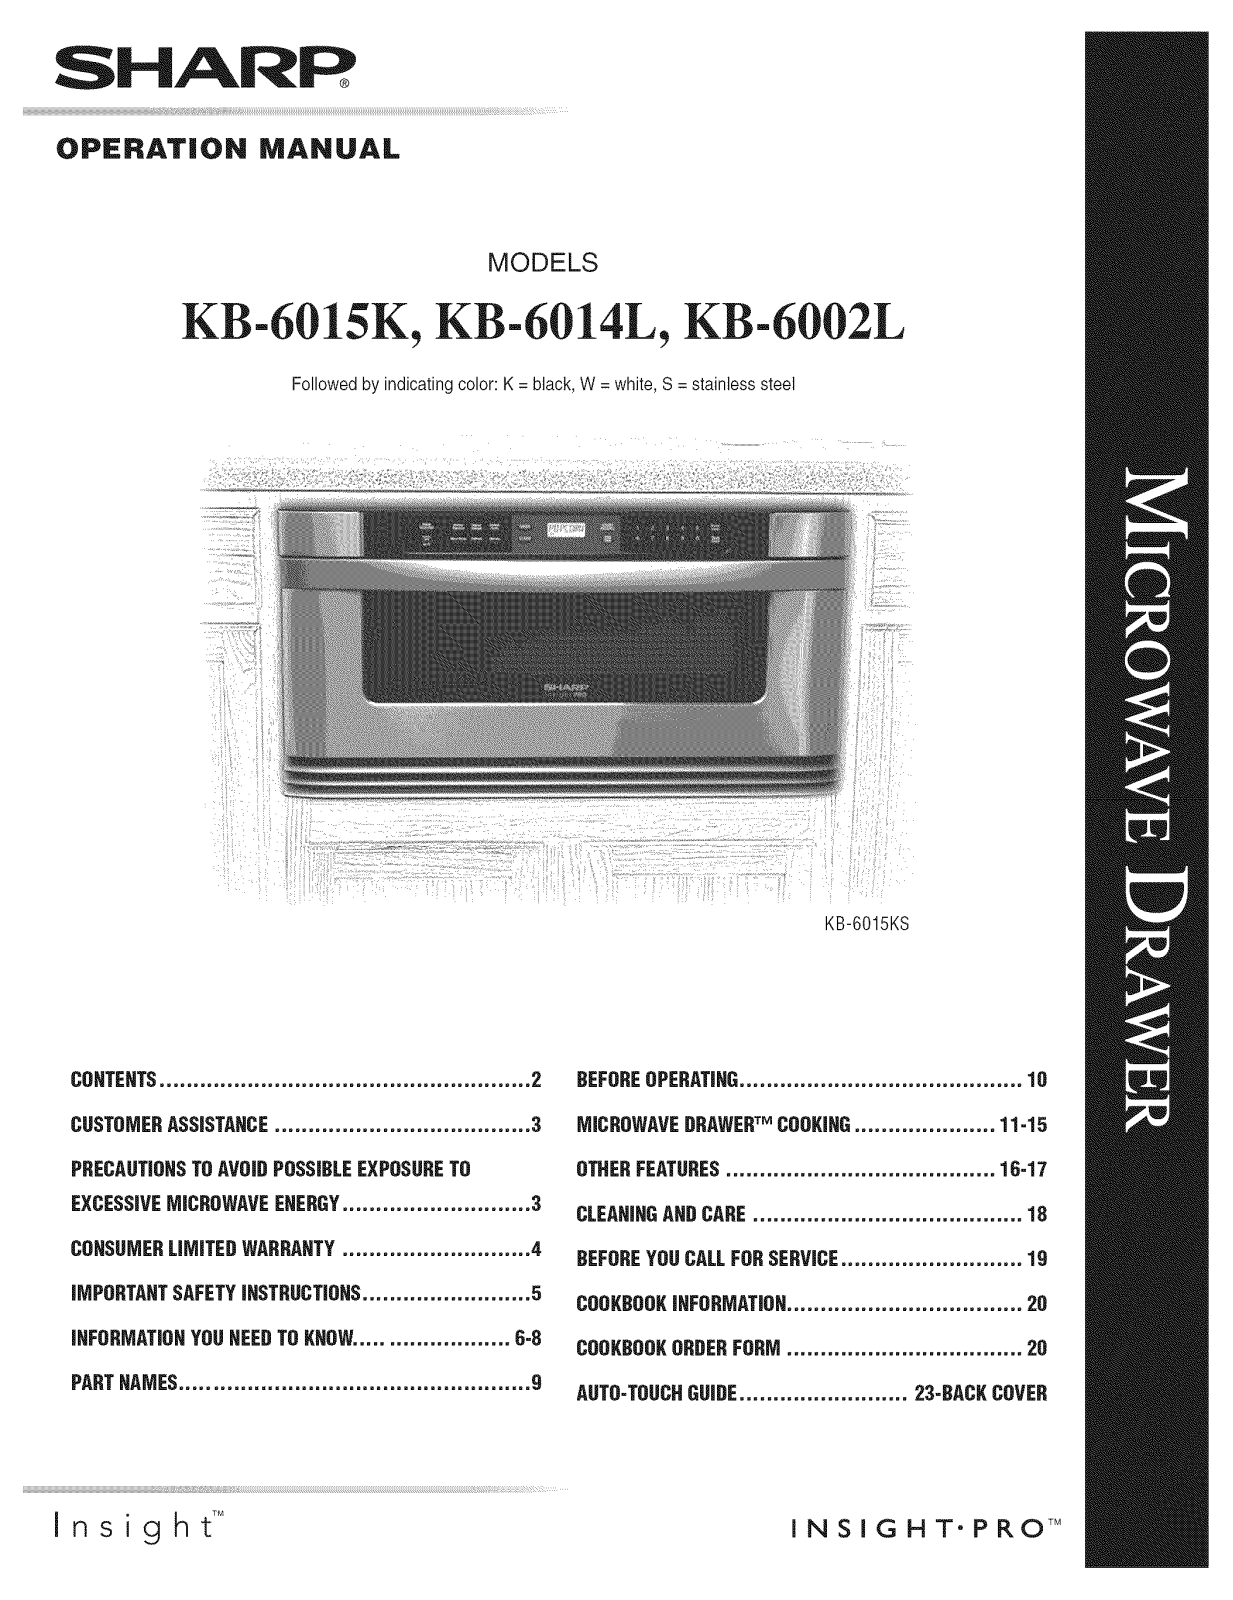 Sharp KB-6015KW, KB-6015KS, KB-6015KK, KB-6014LW, KB-6014LK Owner’s Manual